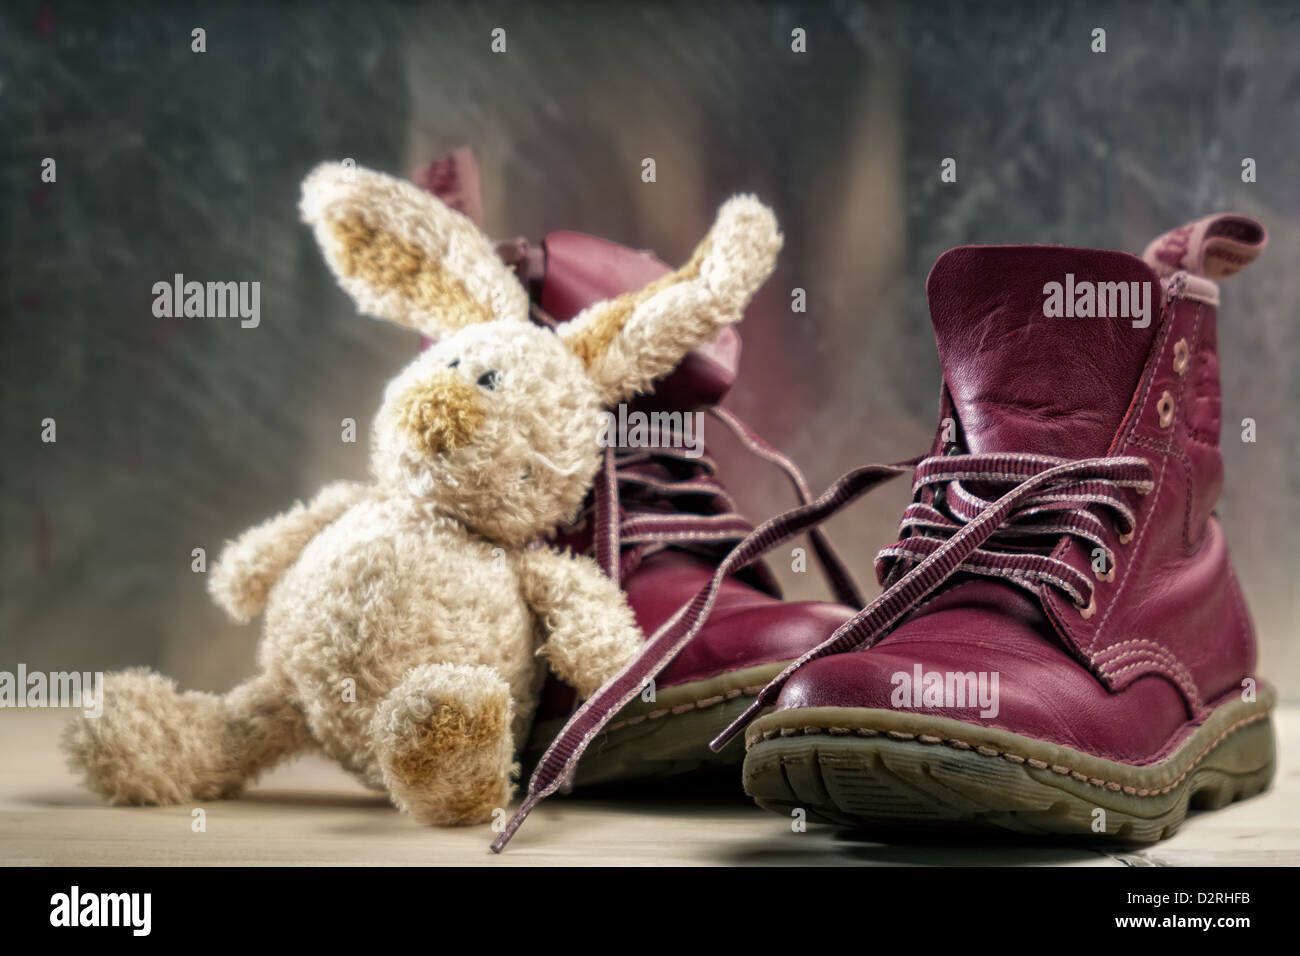 Vieilles chaussures et toy close up shot contre origines grunge Banque D'Images